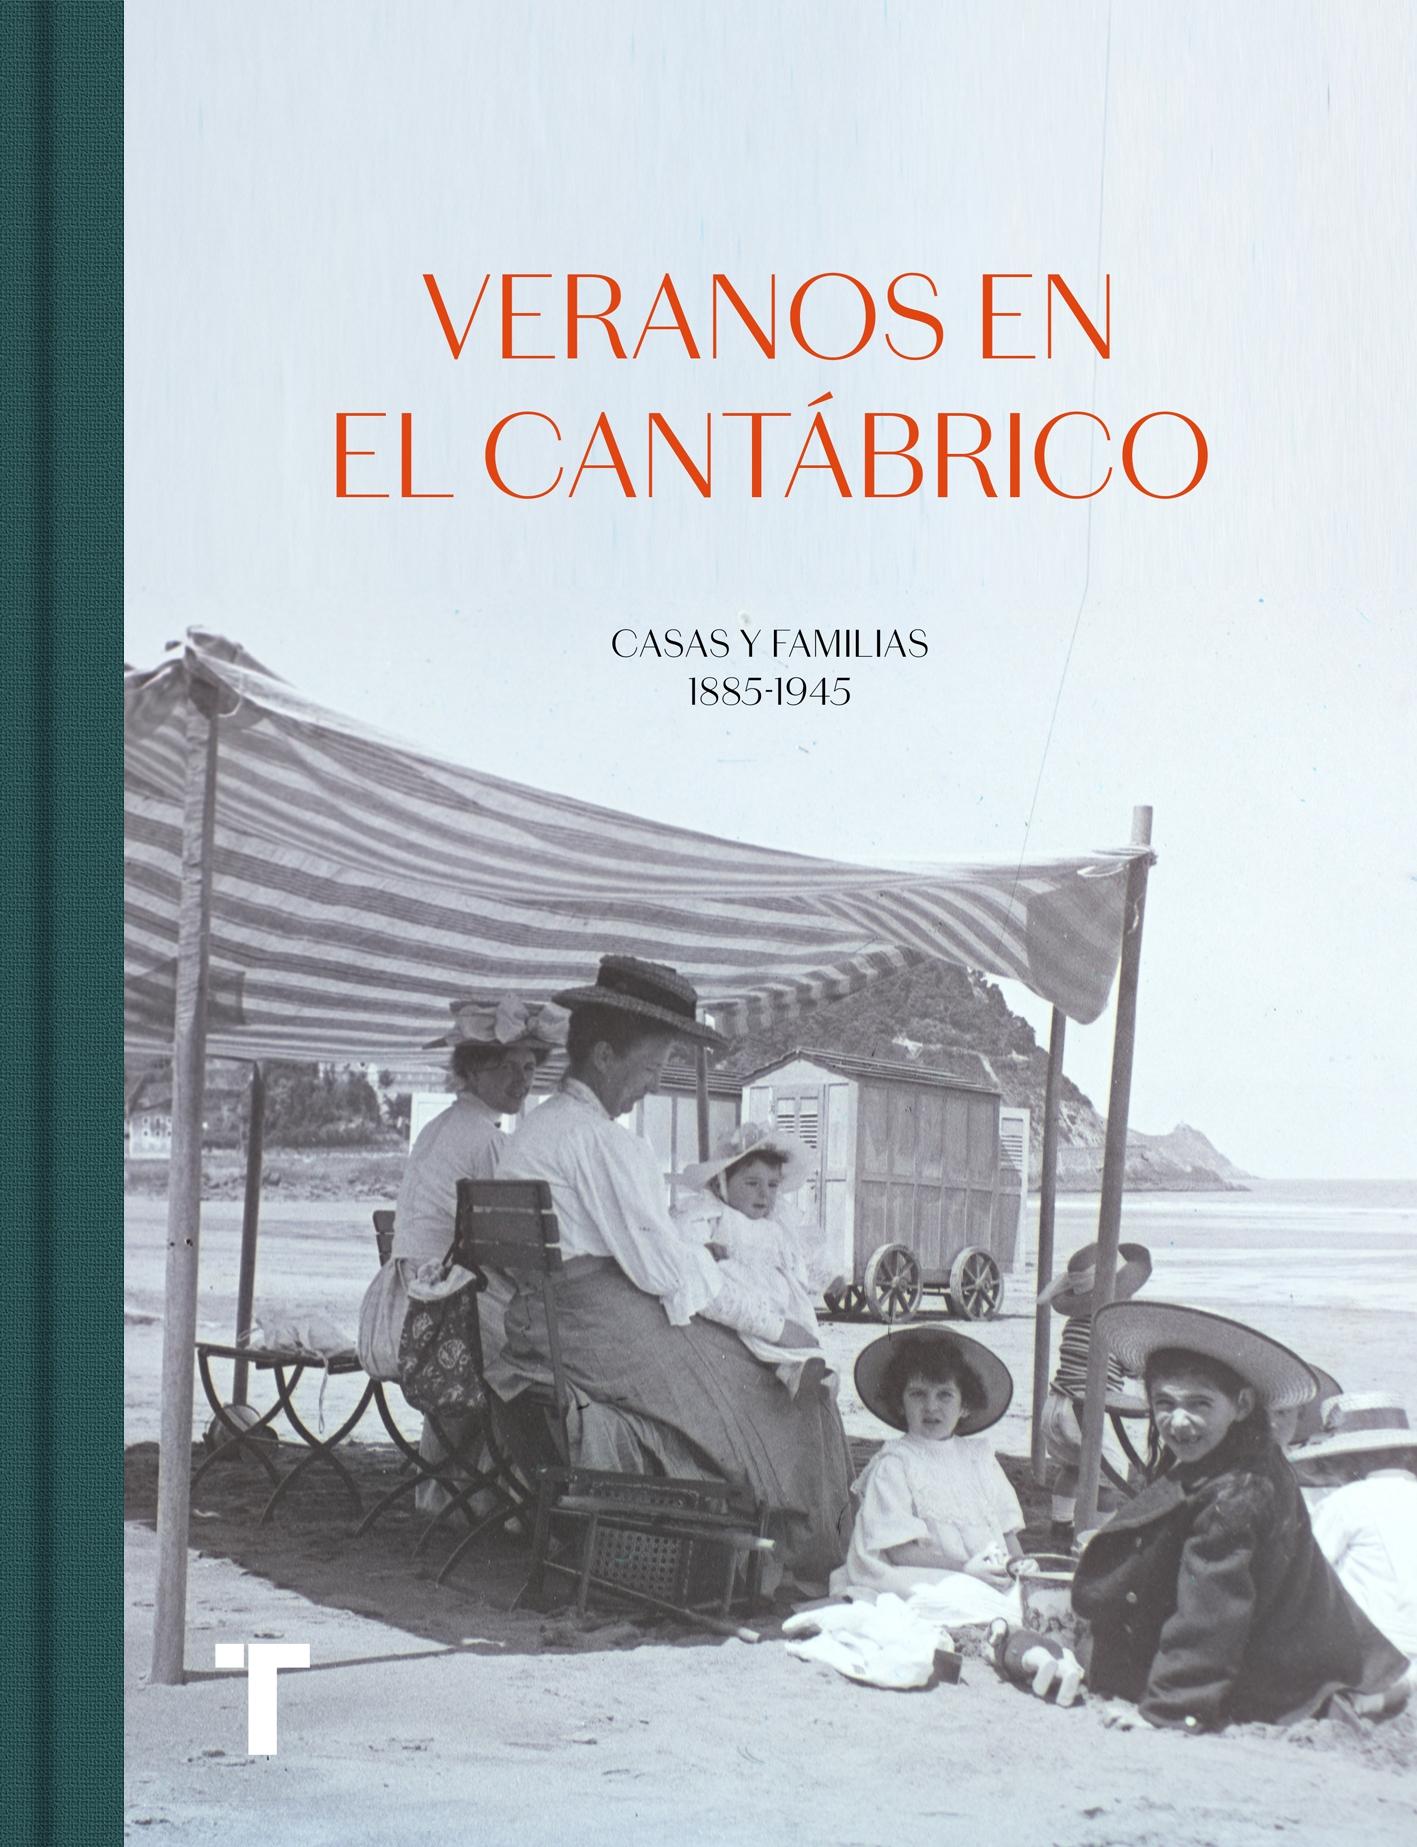 Veranos en el Cantábrico "Casas y familias 1885-1945"